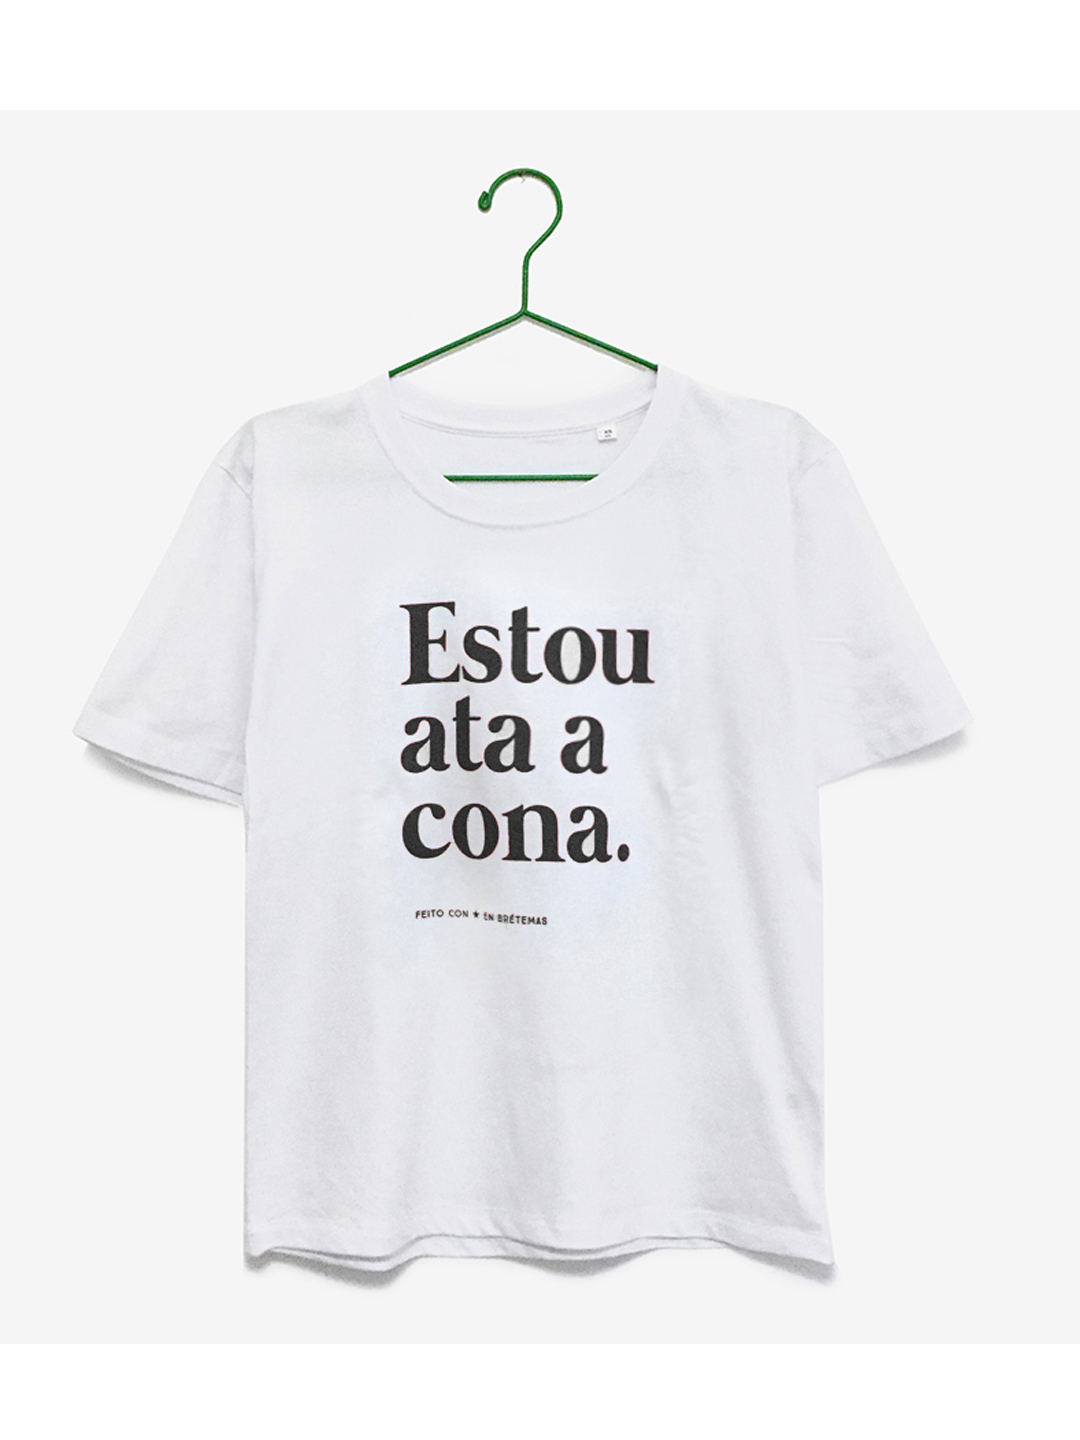 Camiseta "Estou ata a cona" br l ng